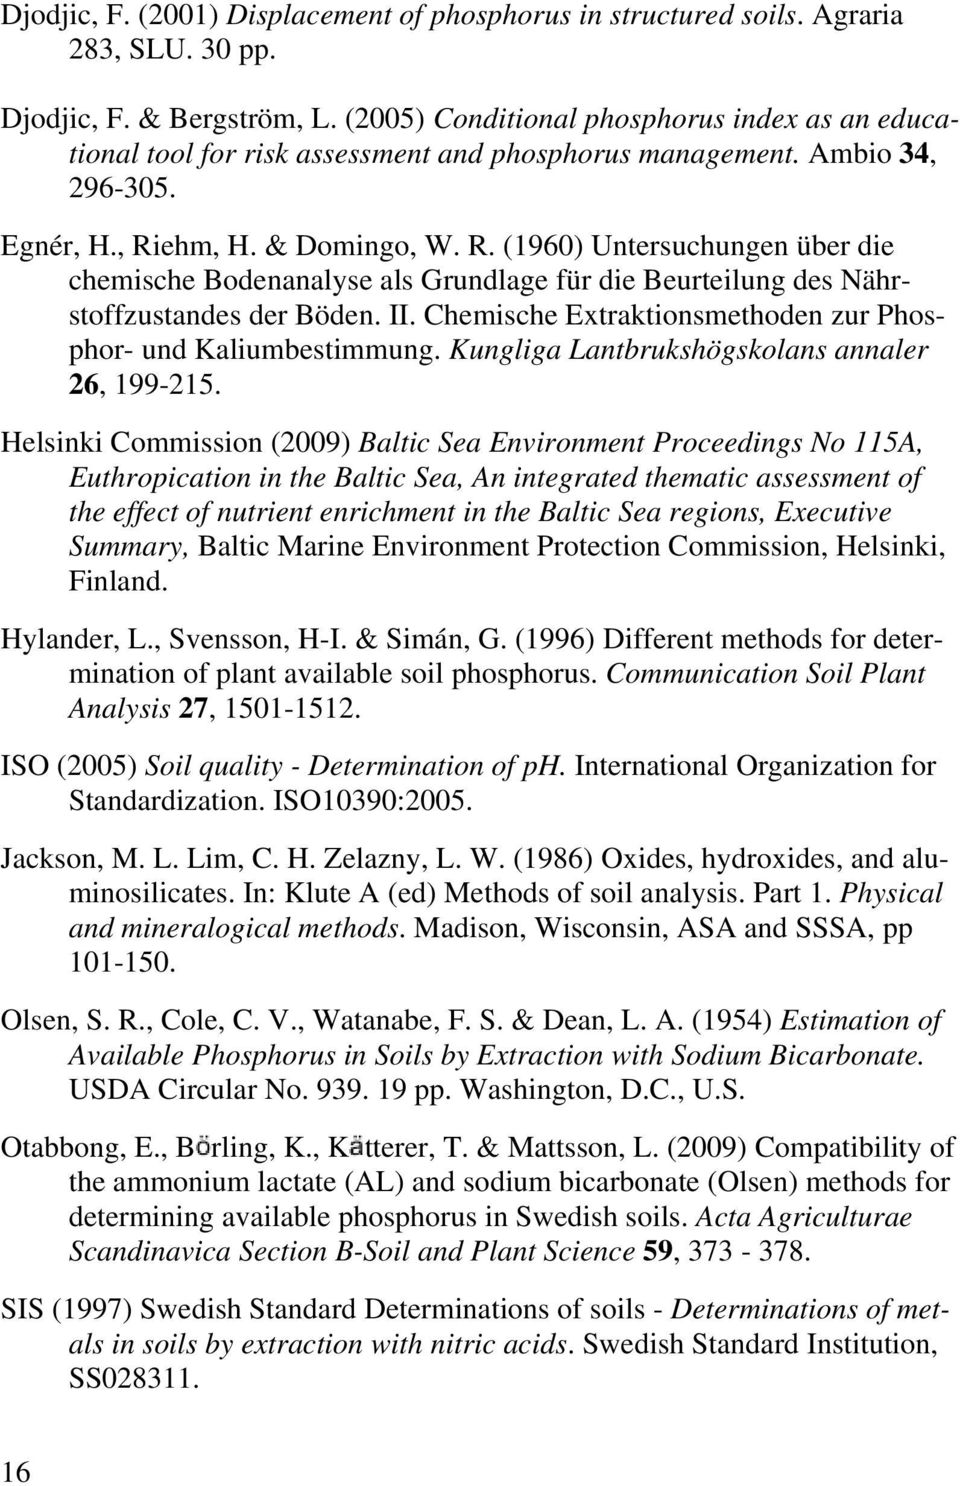 ehm, H. & Domingo, W. R. (1960) Untersuchungen über die chemische Bodenanalyse als Grundlage für die Beurteilung des Nährstoffzustandes der Böden. II.